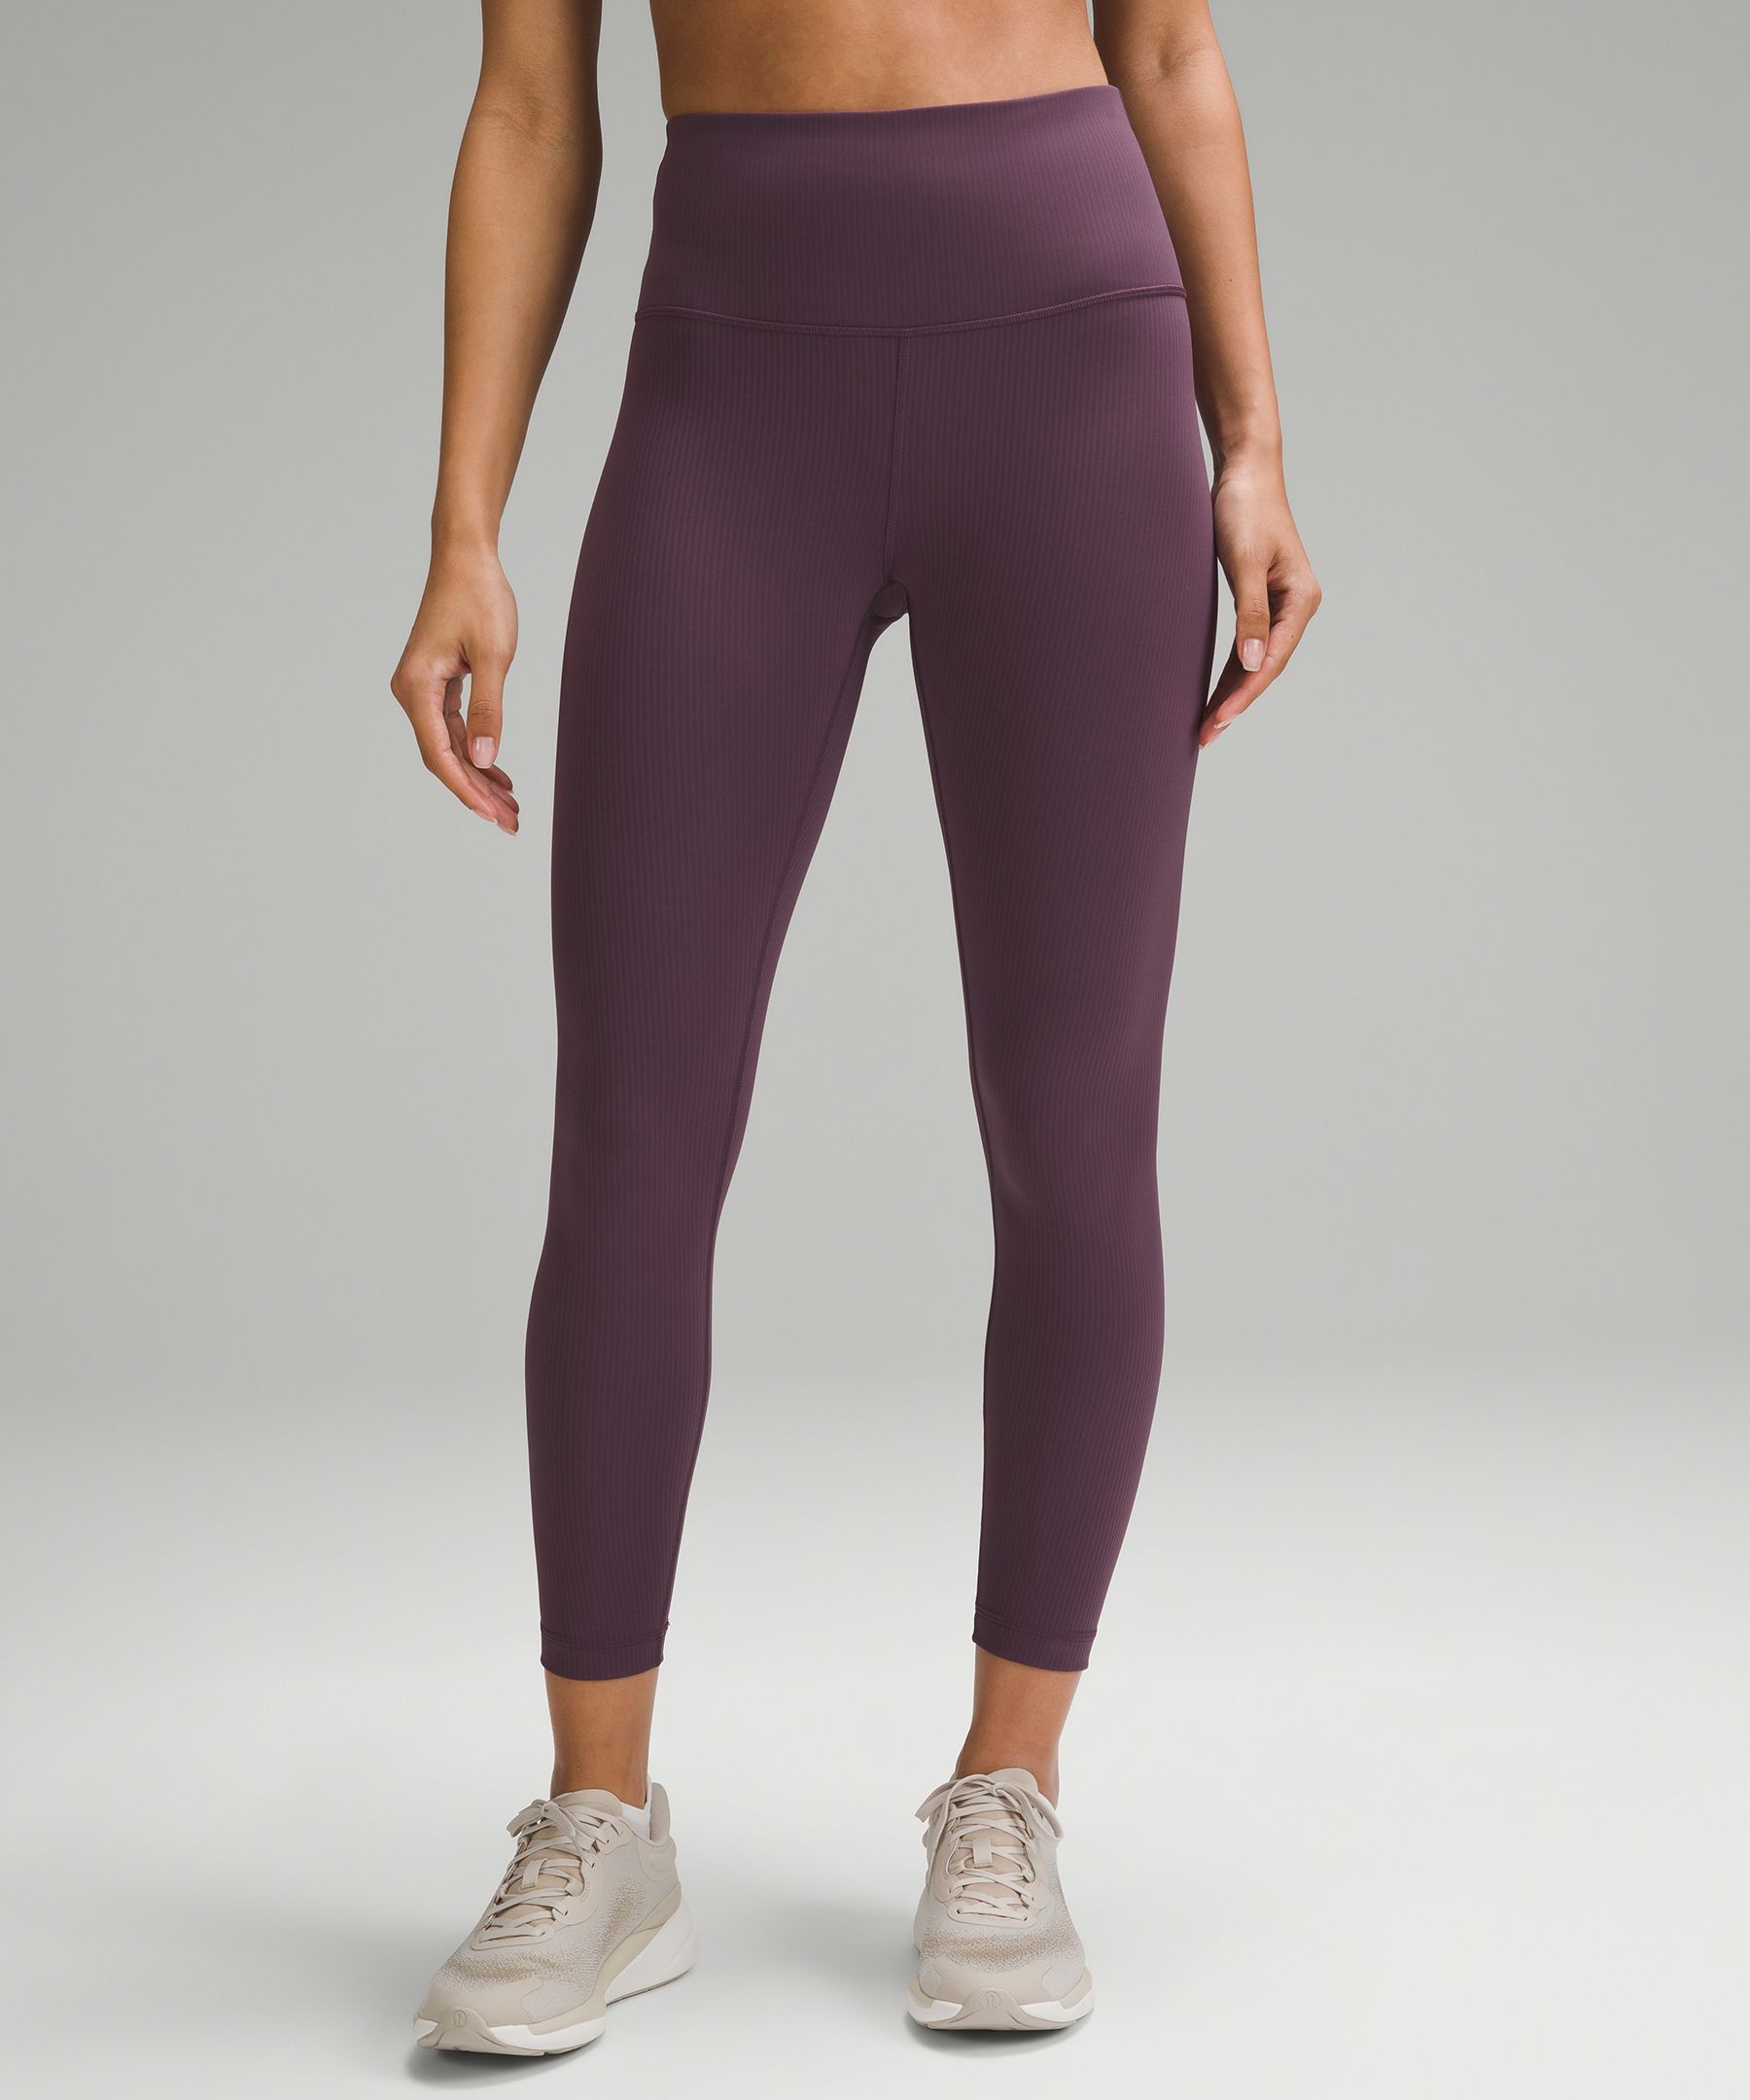 Lululemon Straight Up Yoga PantS Size 2 w/key pocket GREY waist 